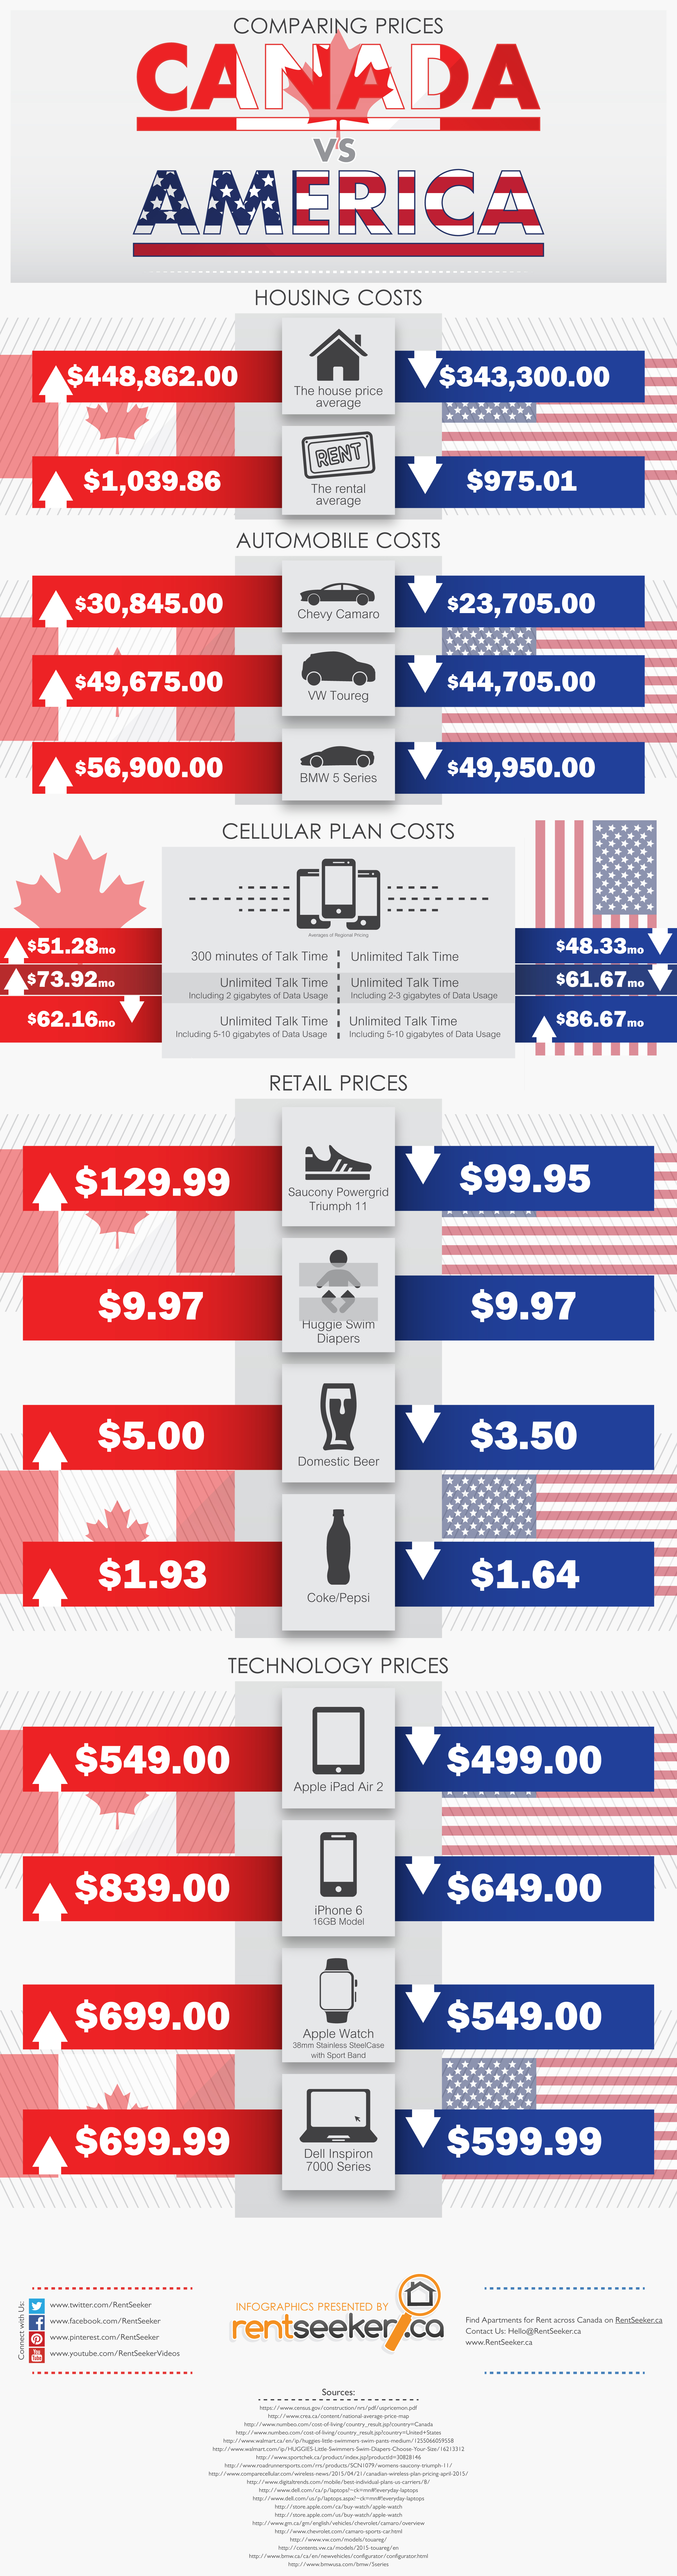 Canada vs. U.S. Price Comparison INFOGRAPHIC